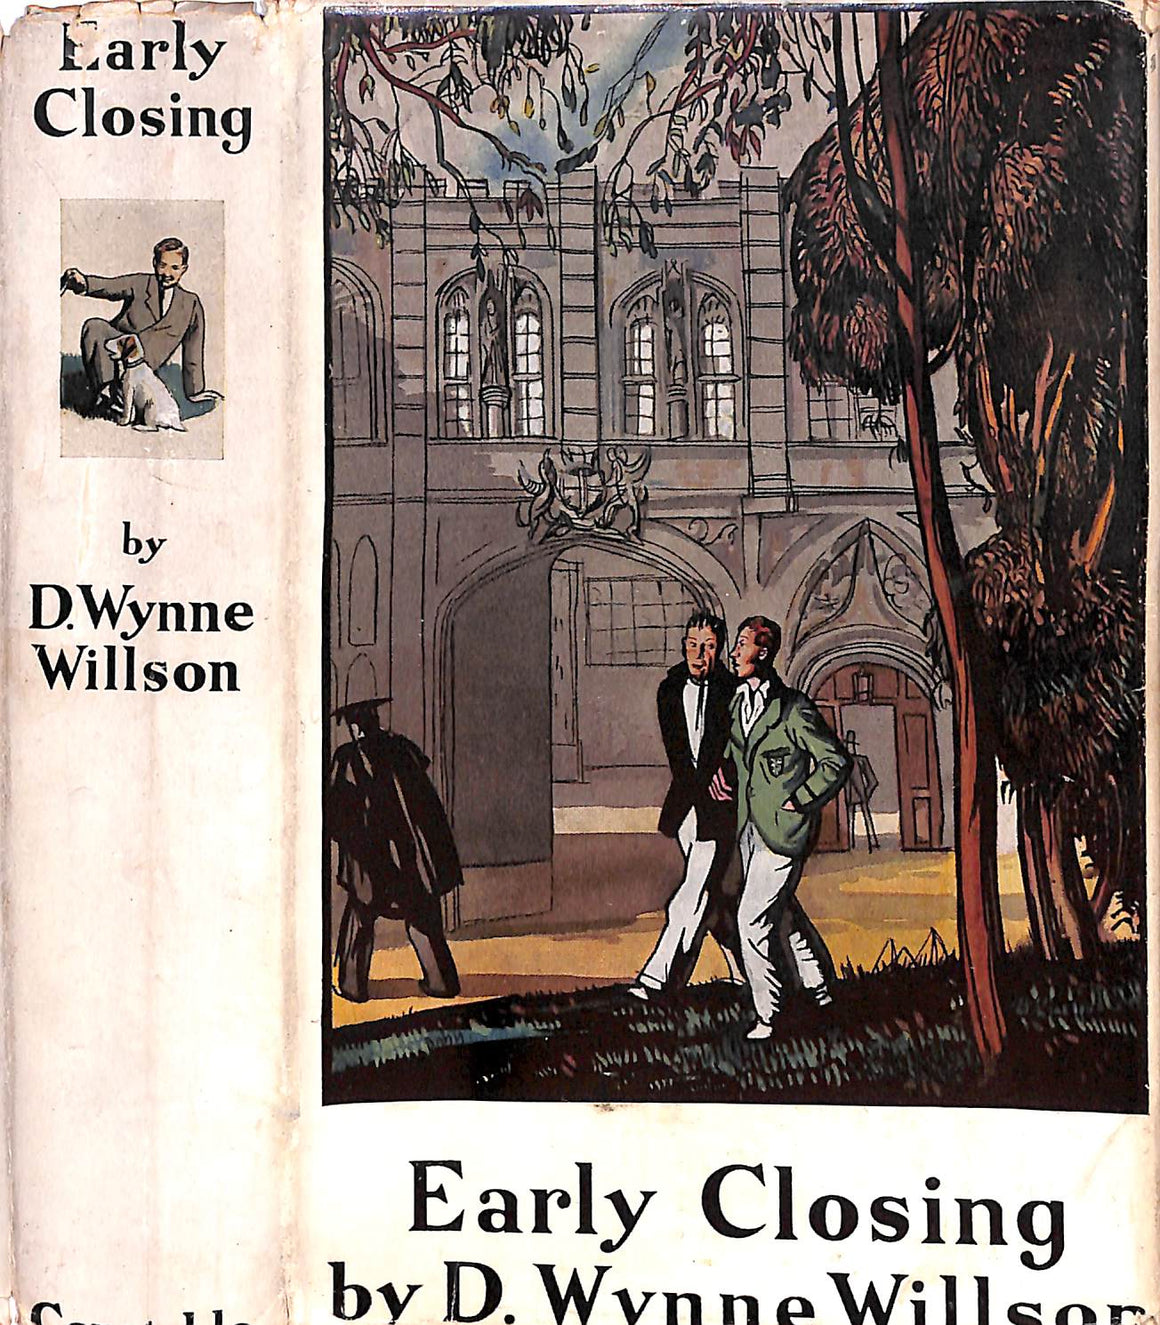 "Early Closing" 1933 WILLSON, D. Wynne